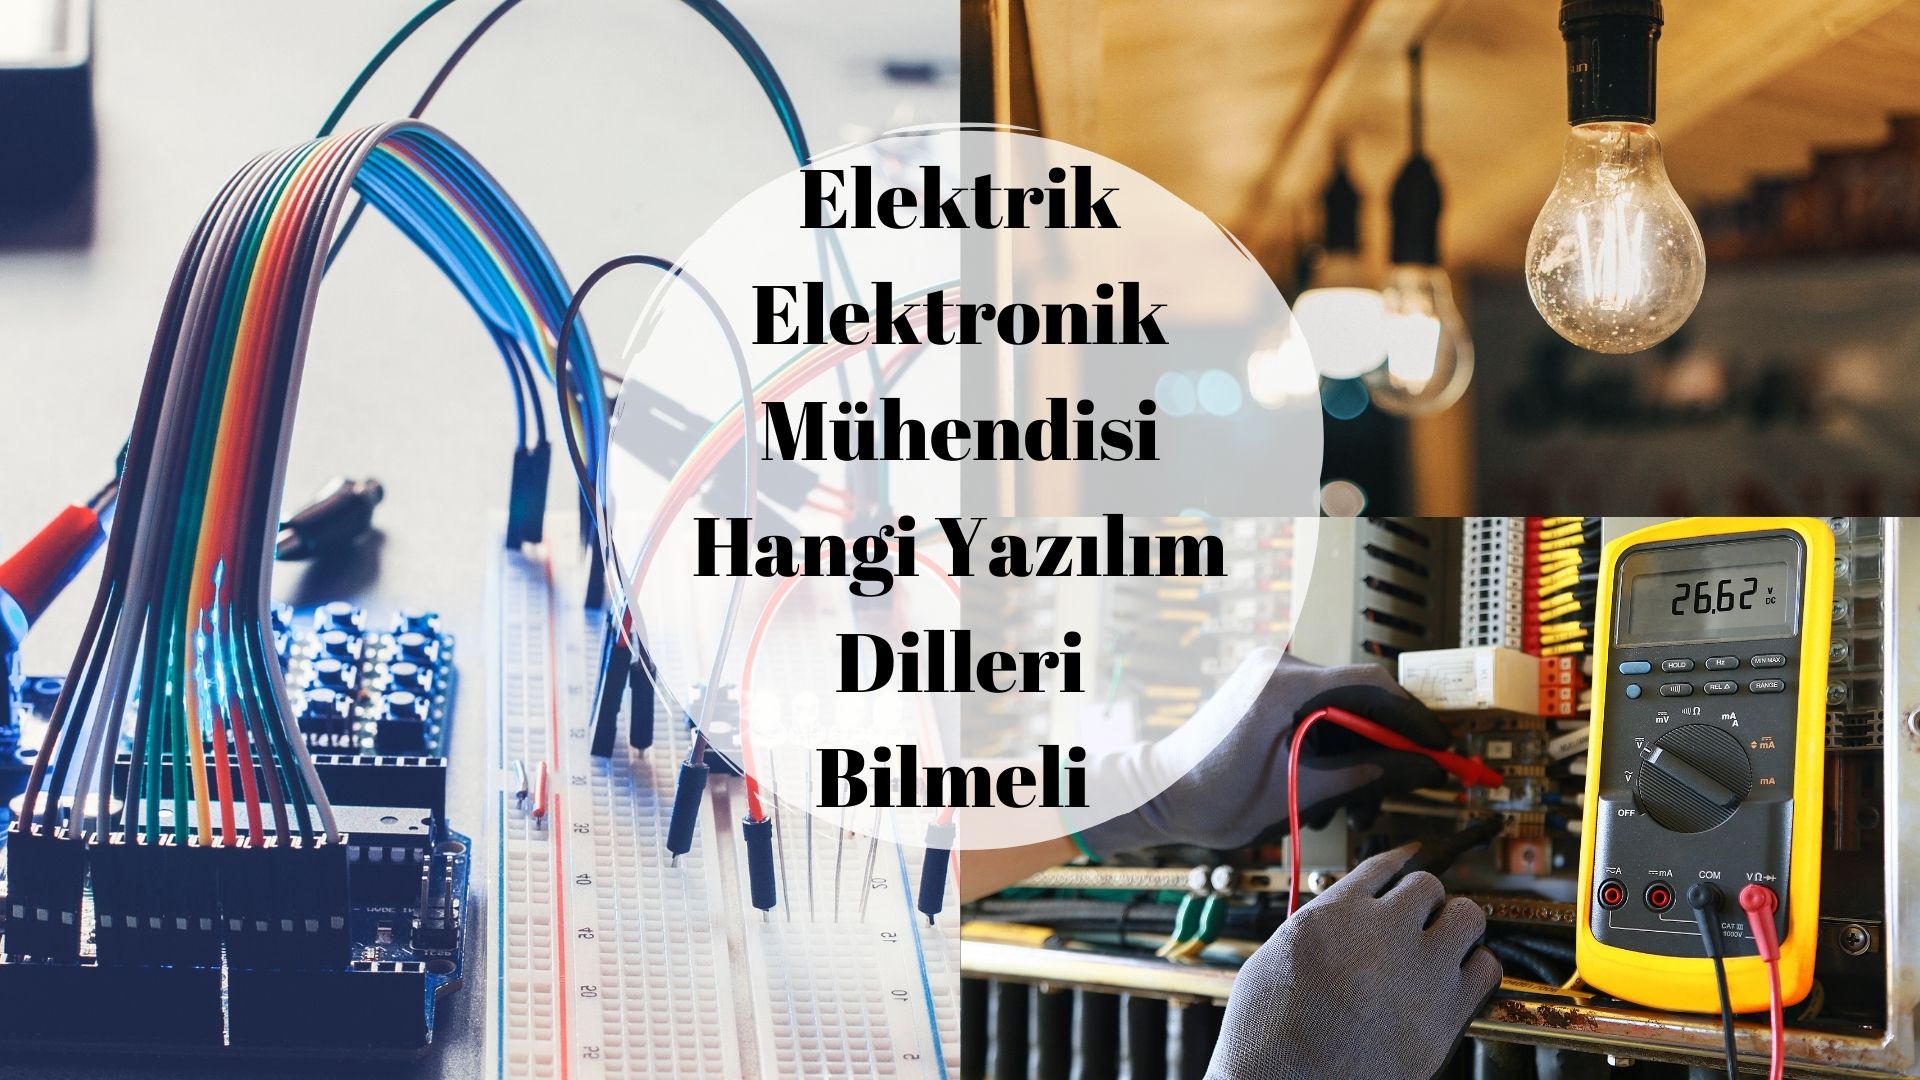 Elektrik Elektronik Mühendisi Hangi Yazılım Dilleri Bilmeli